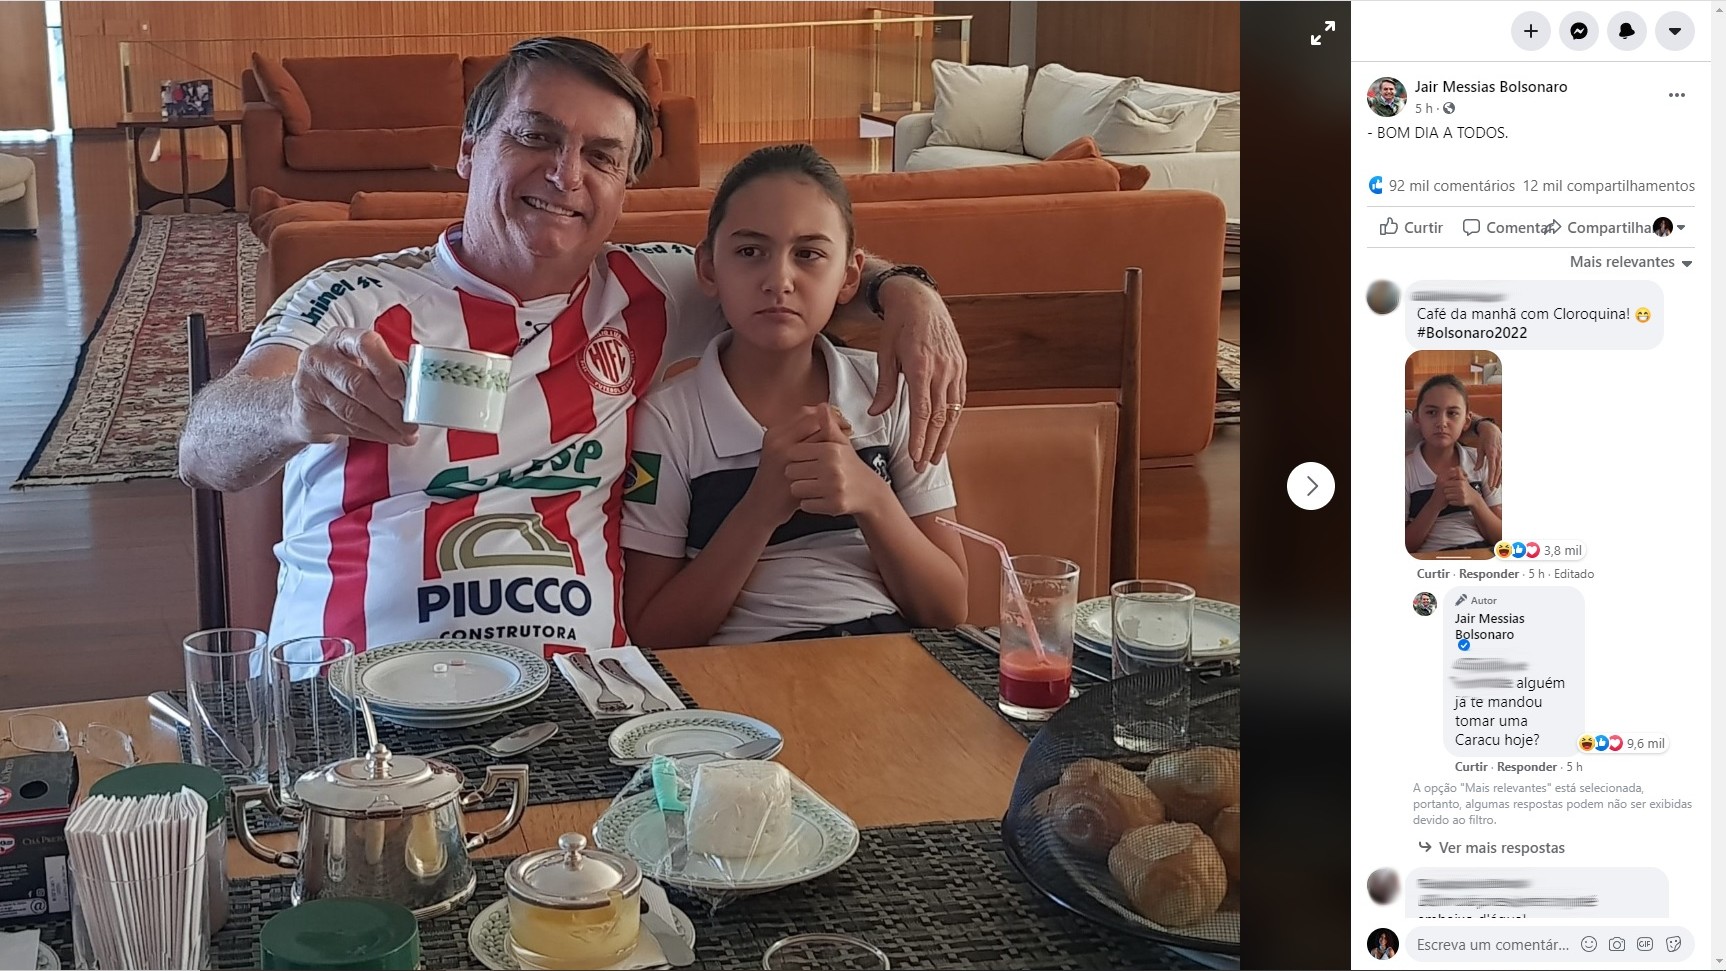 Bolsonaro posta foto com filha e rebate crítica: “Já tomou Caracu hoje?” -  ISTOÉ Independente